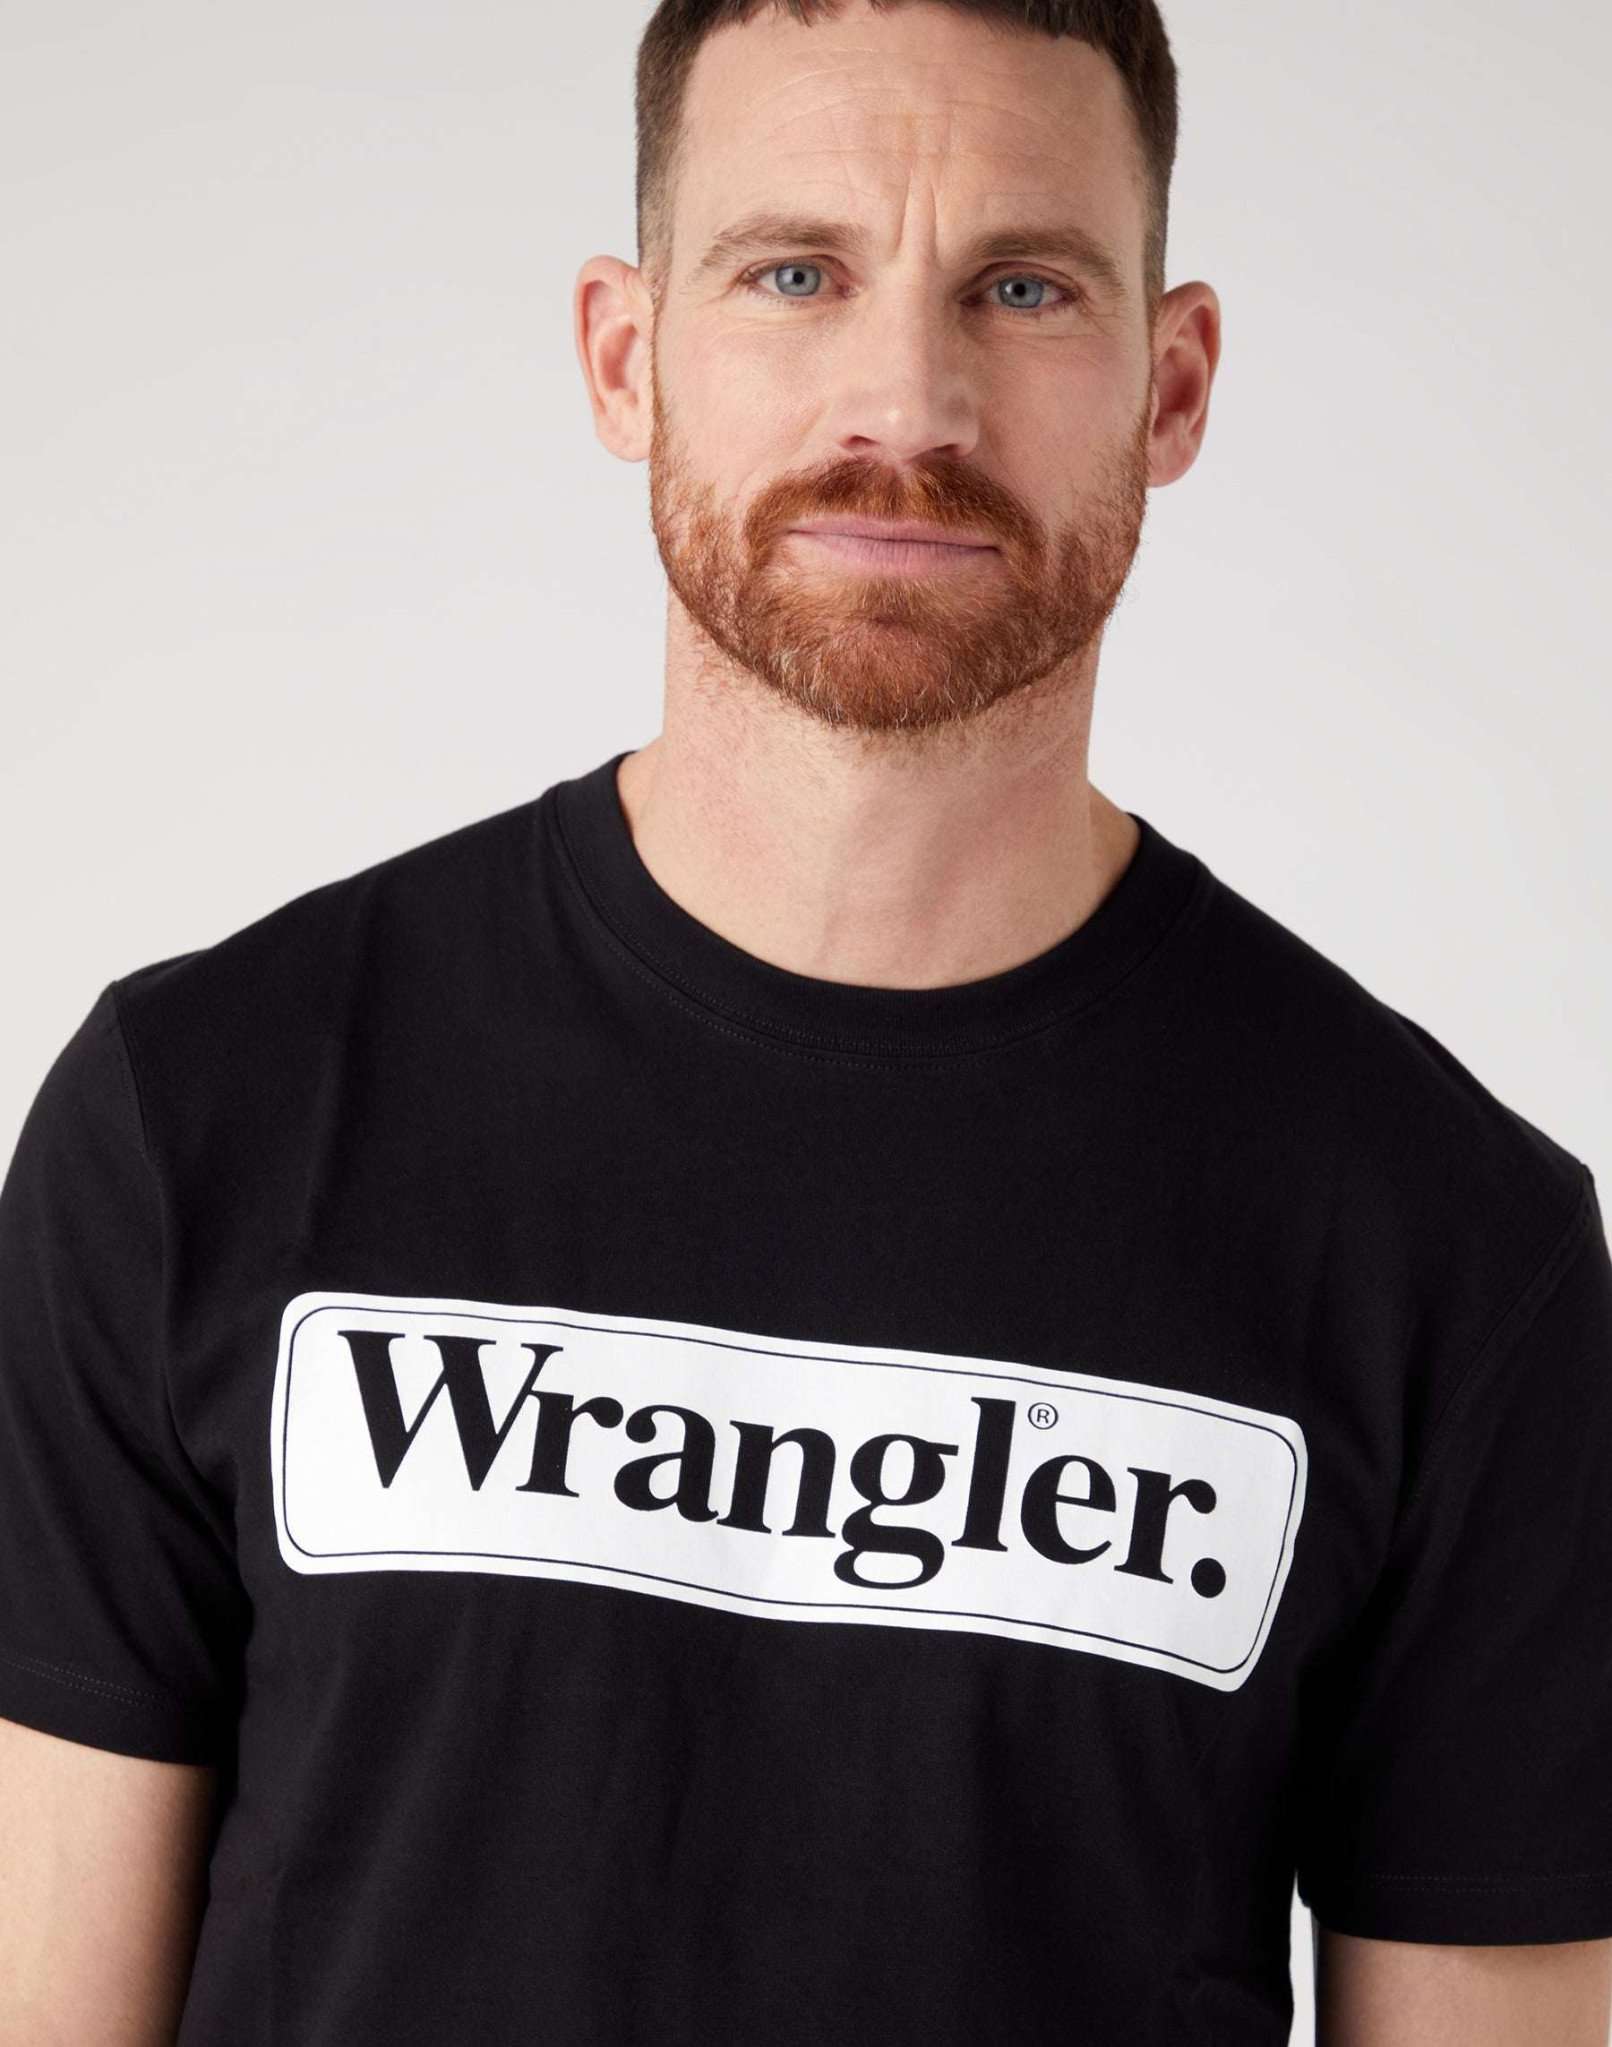 Wrangler Tee in Black T-Shirts Wrangler   